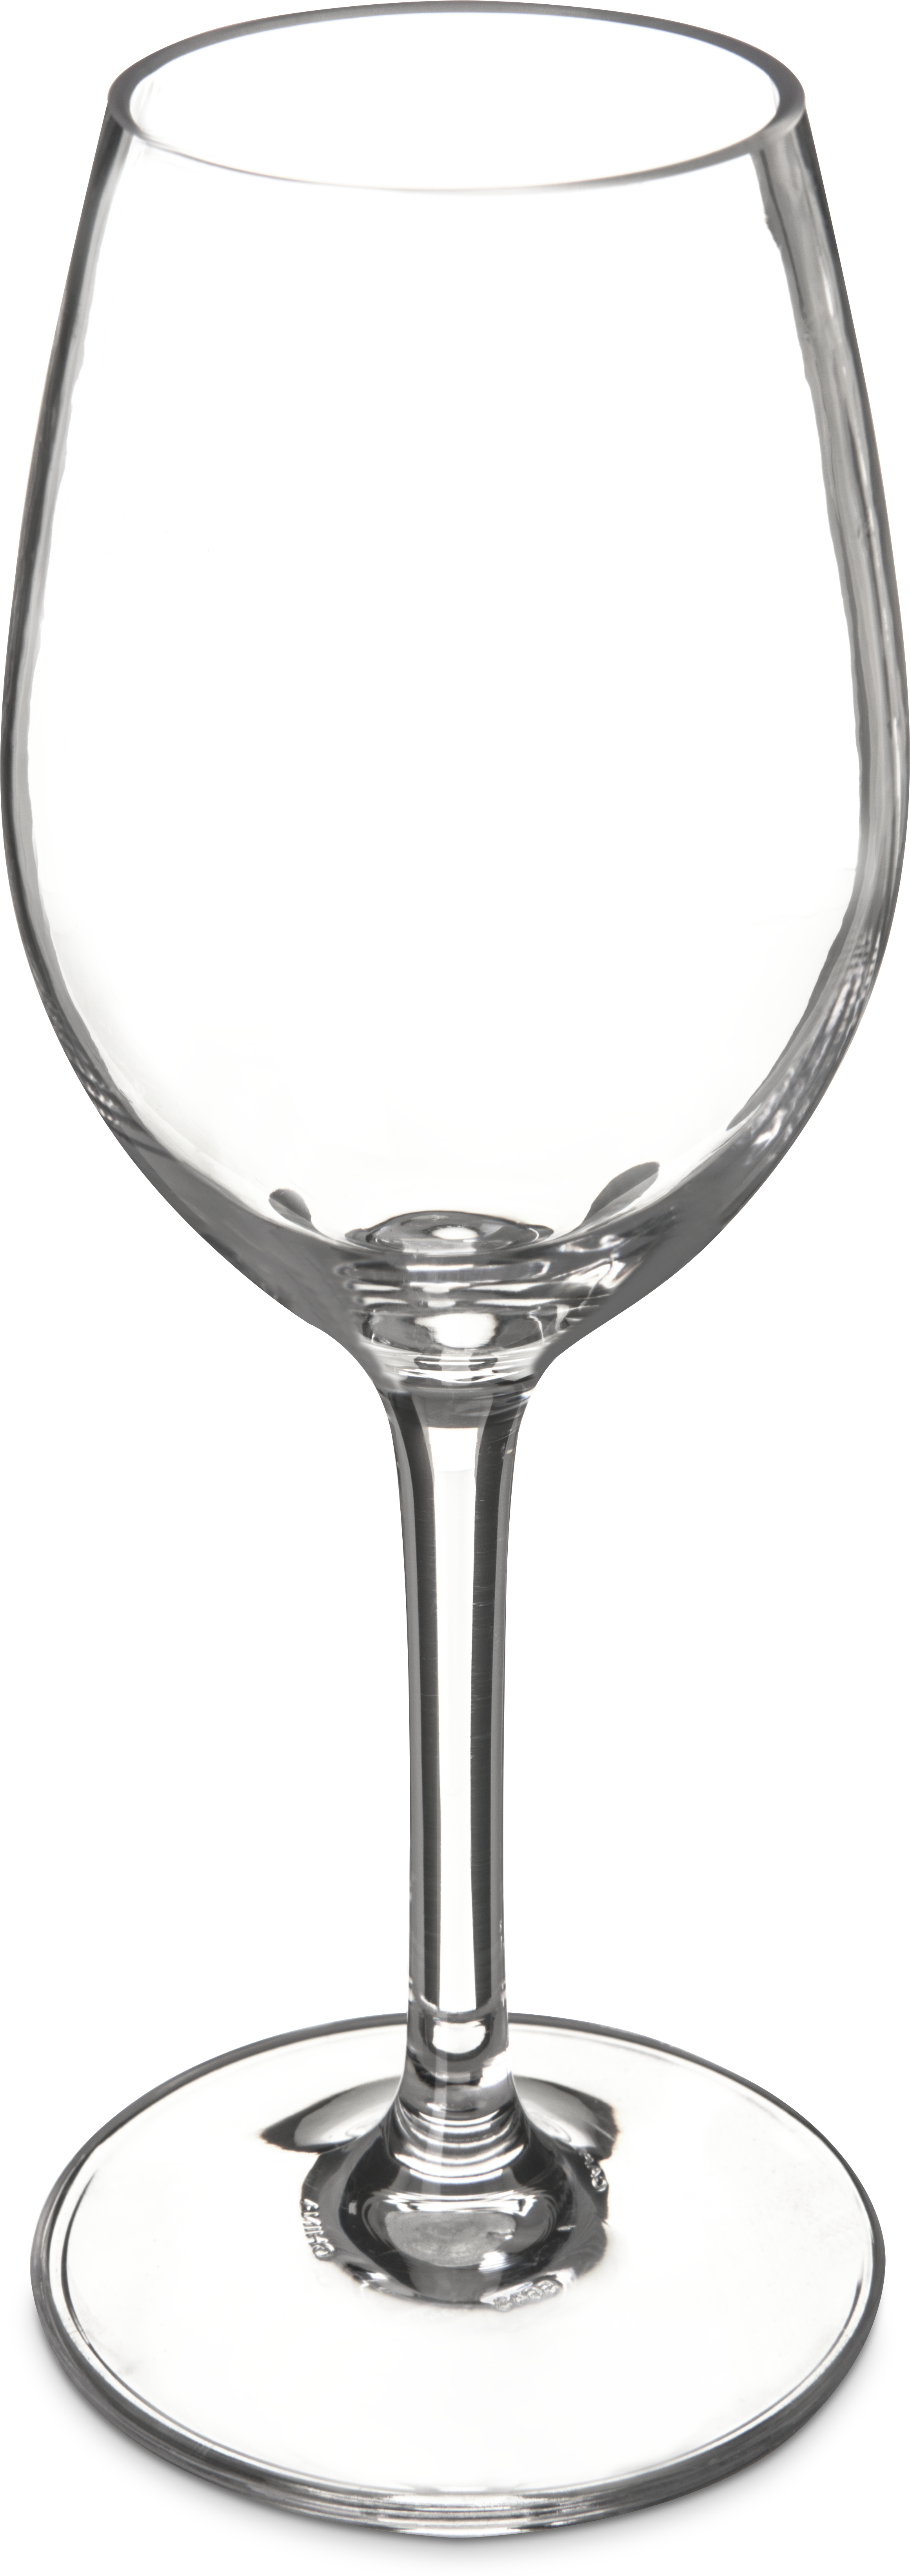 Alibi Plastic White Wine Glass 11 oz (4ea) - Clear